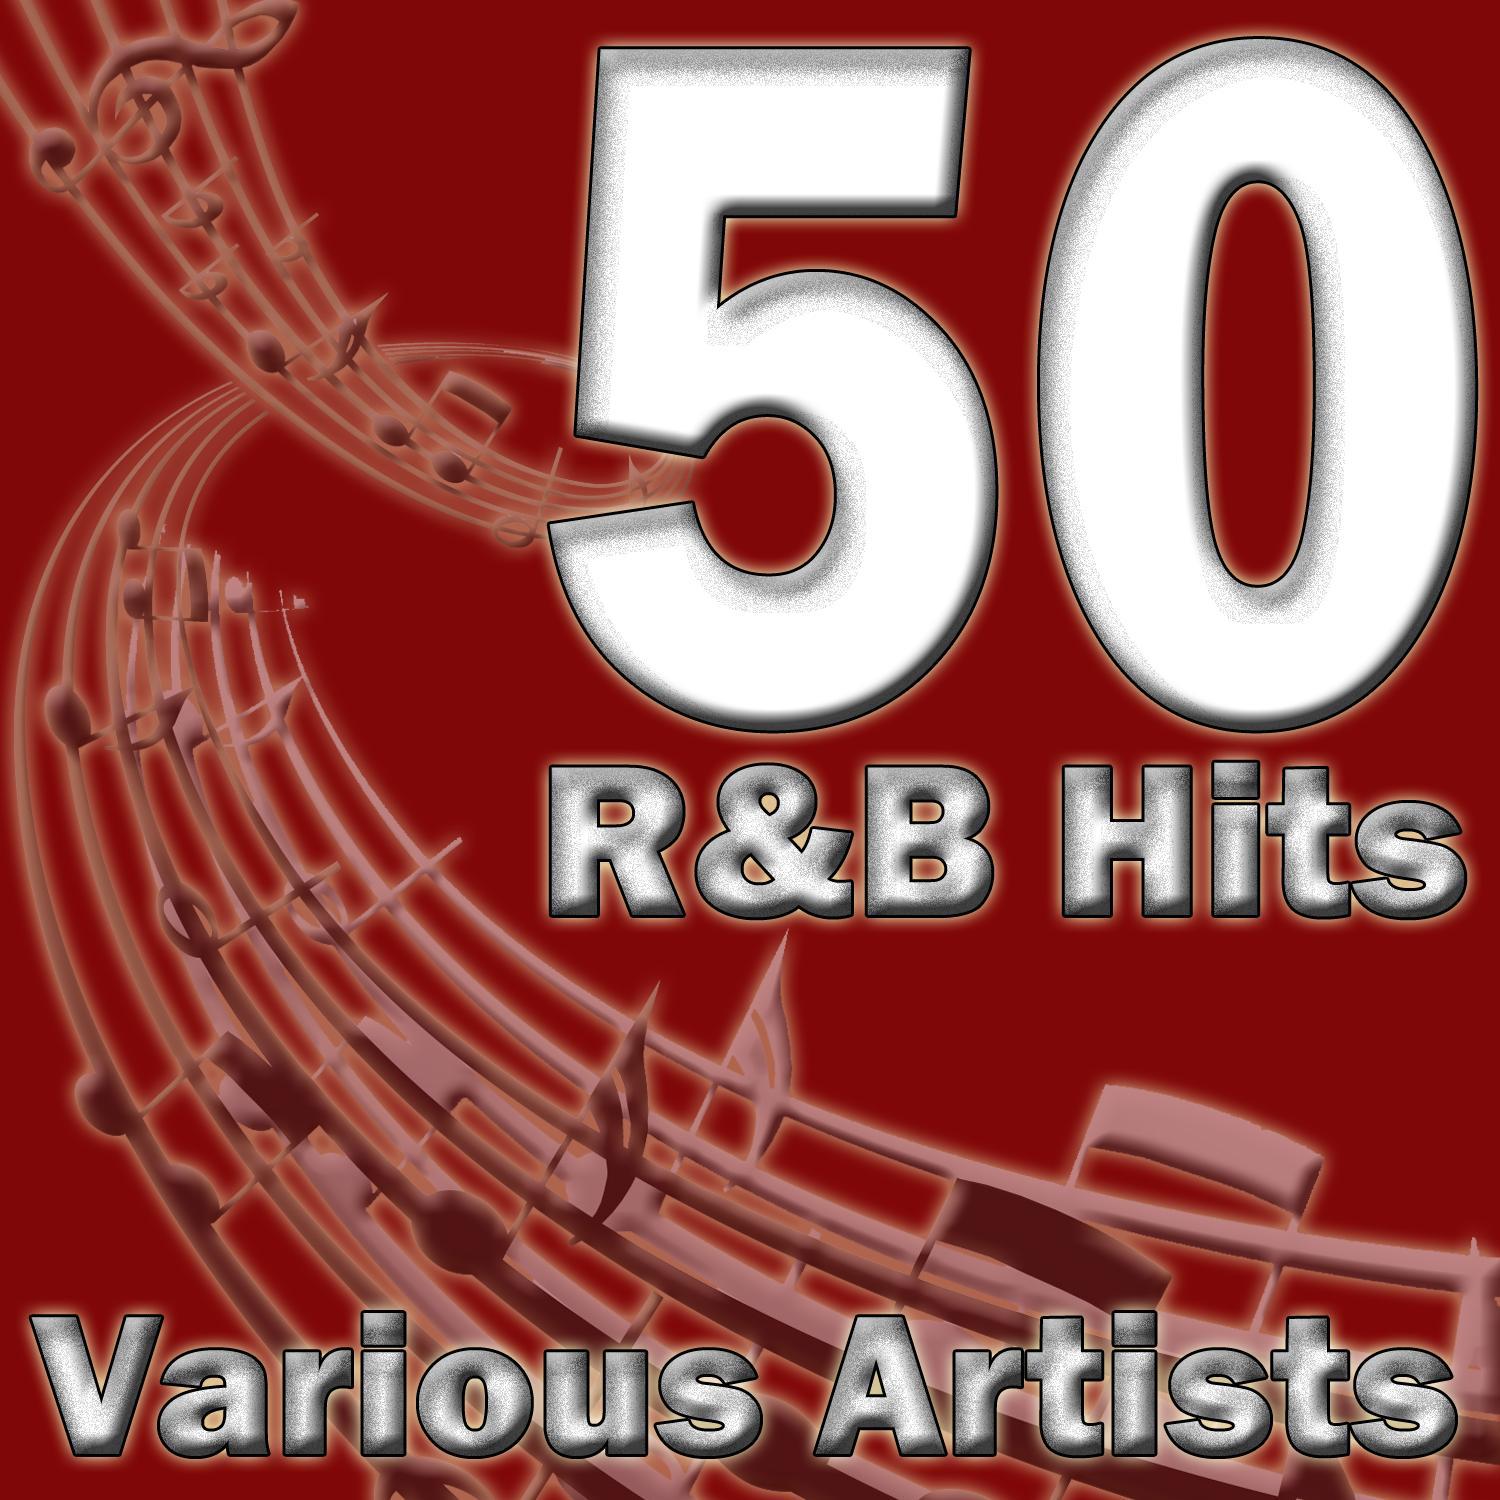 50 R&B Hits